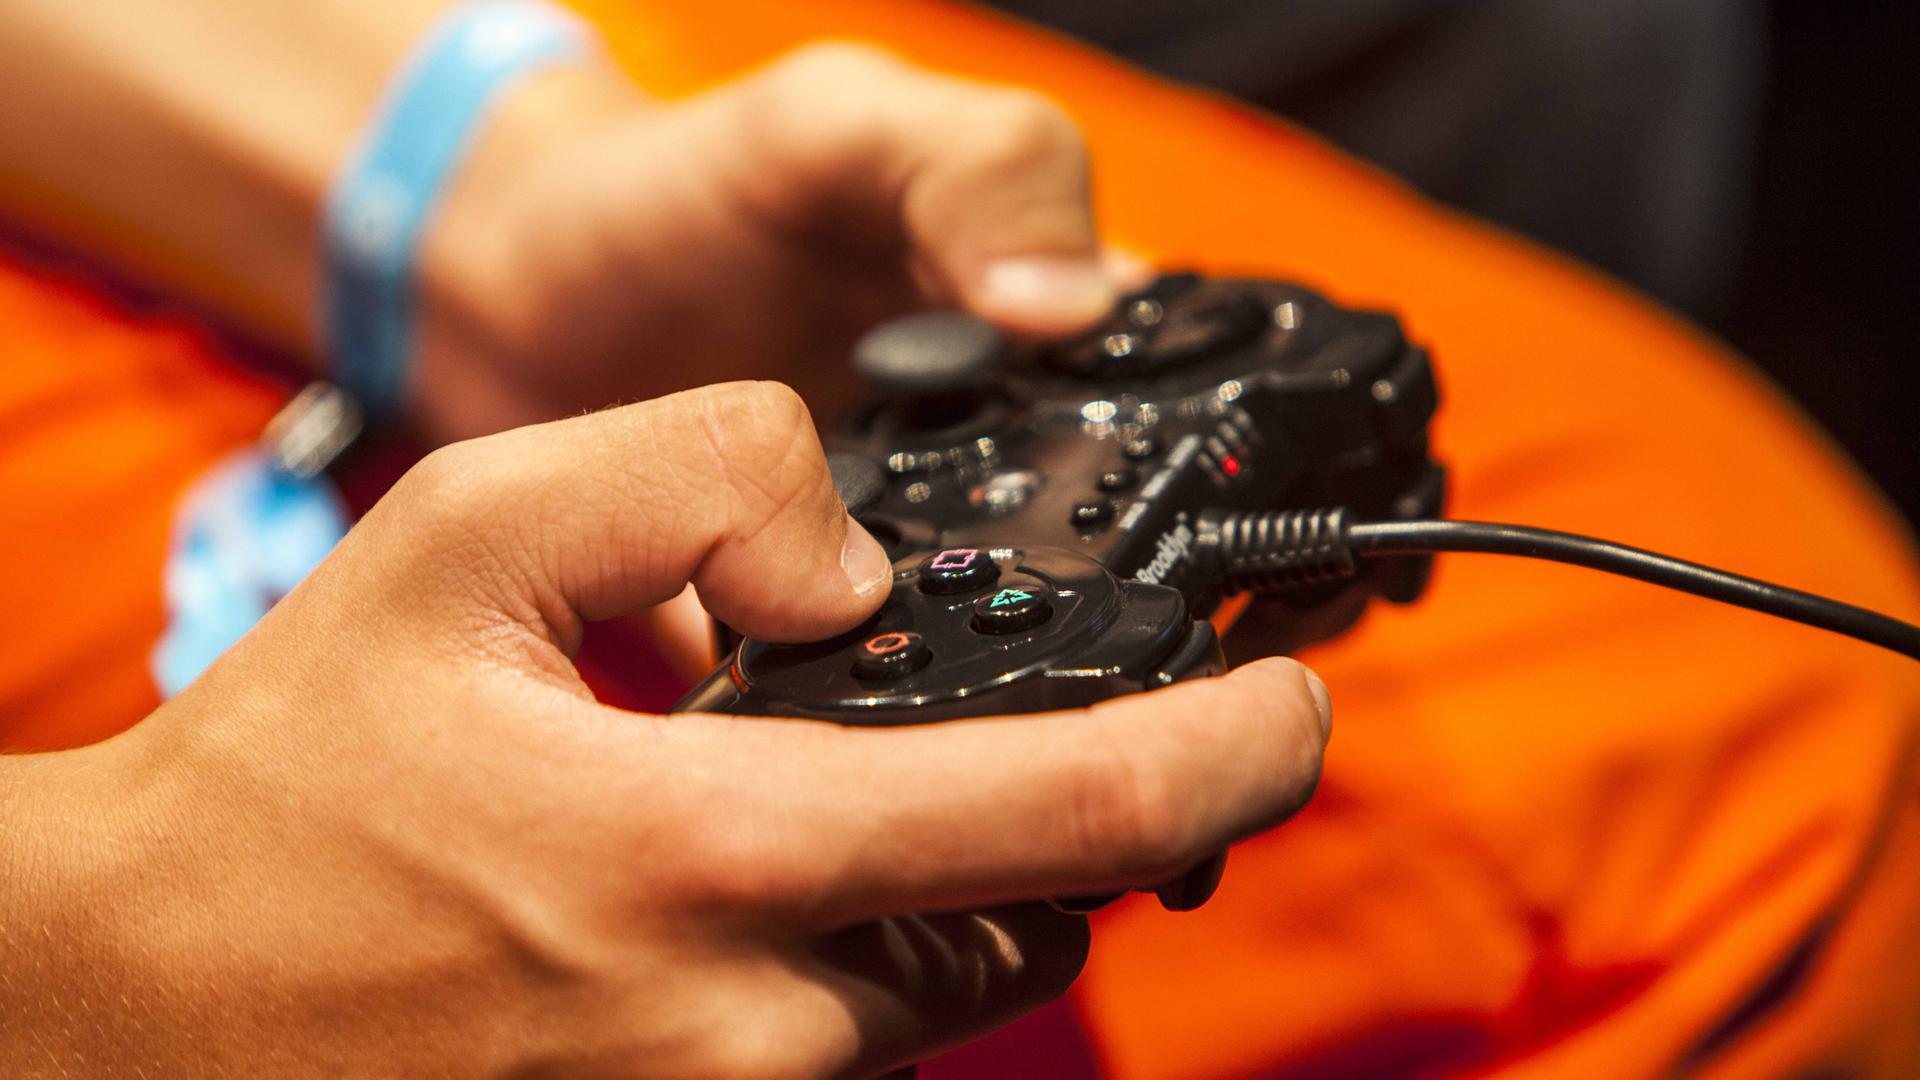 Symbolbild für die Gefahren für Jugendliche bei der unbeaufsichtigten Internetnutzung: Ein Heranwachsender hat den Controller eines Videospiels in der Hand. 